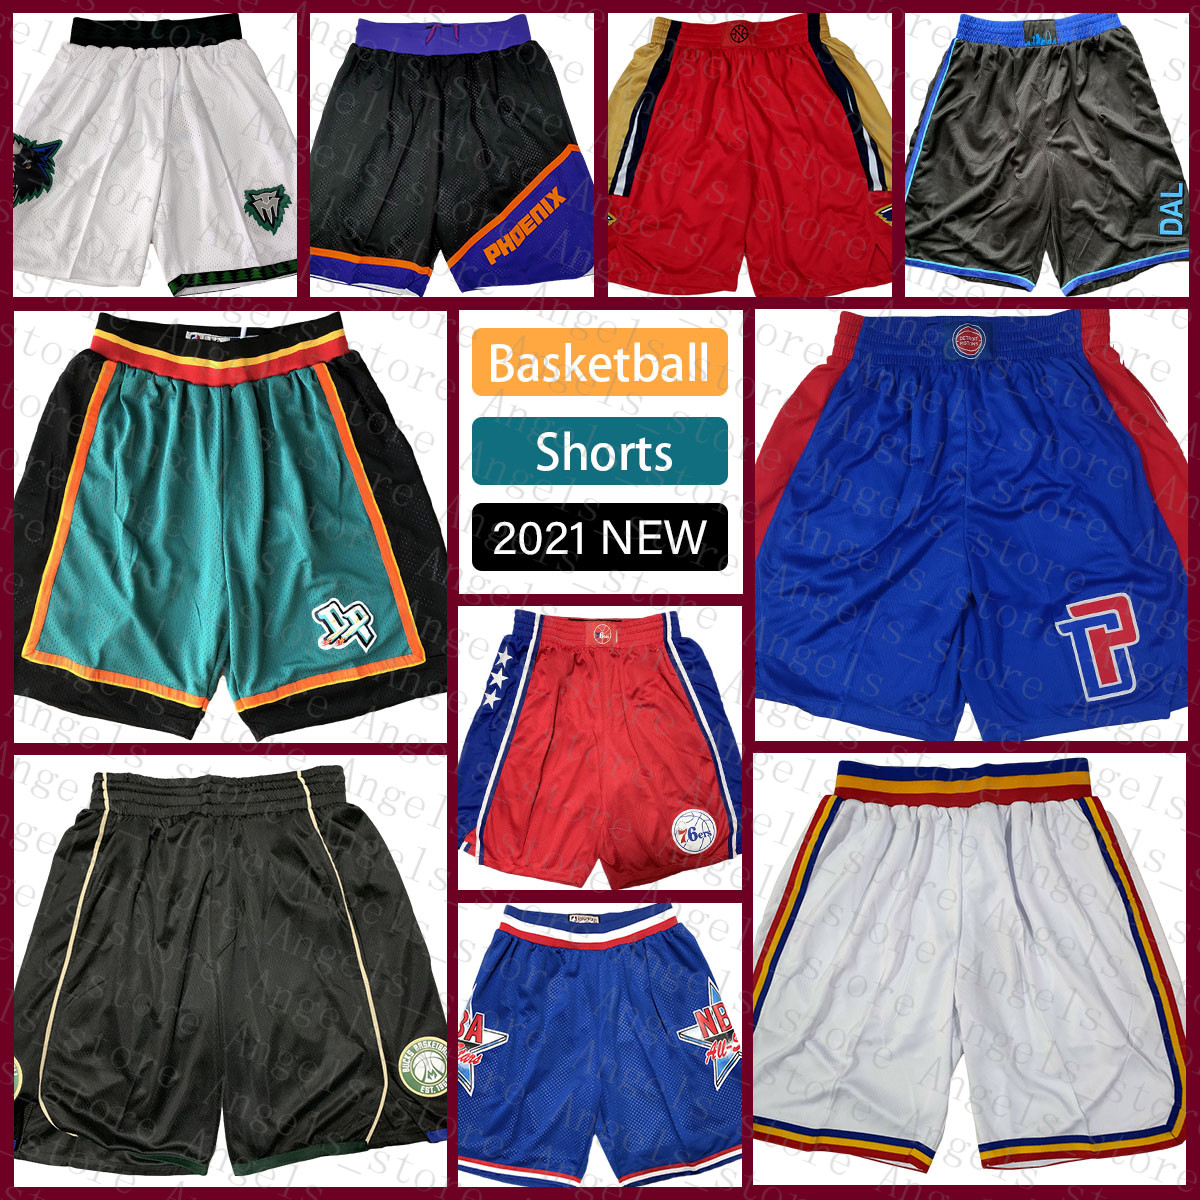 

Detroit''Pistons''Men Basketball Shorts 2022 New 07